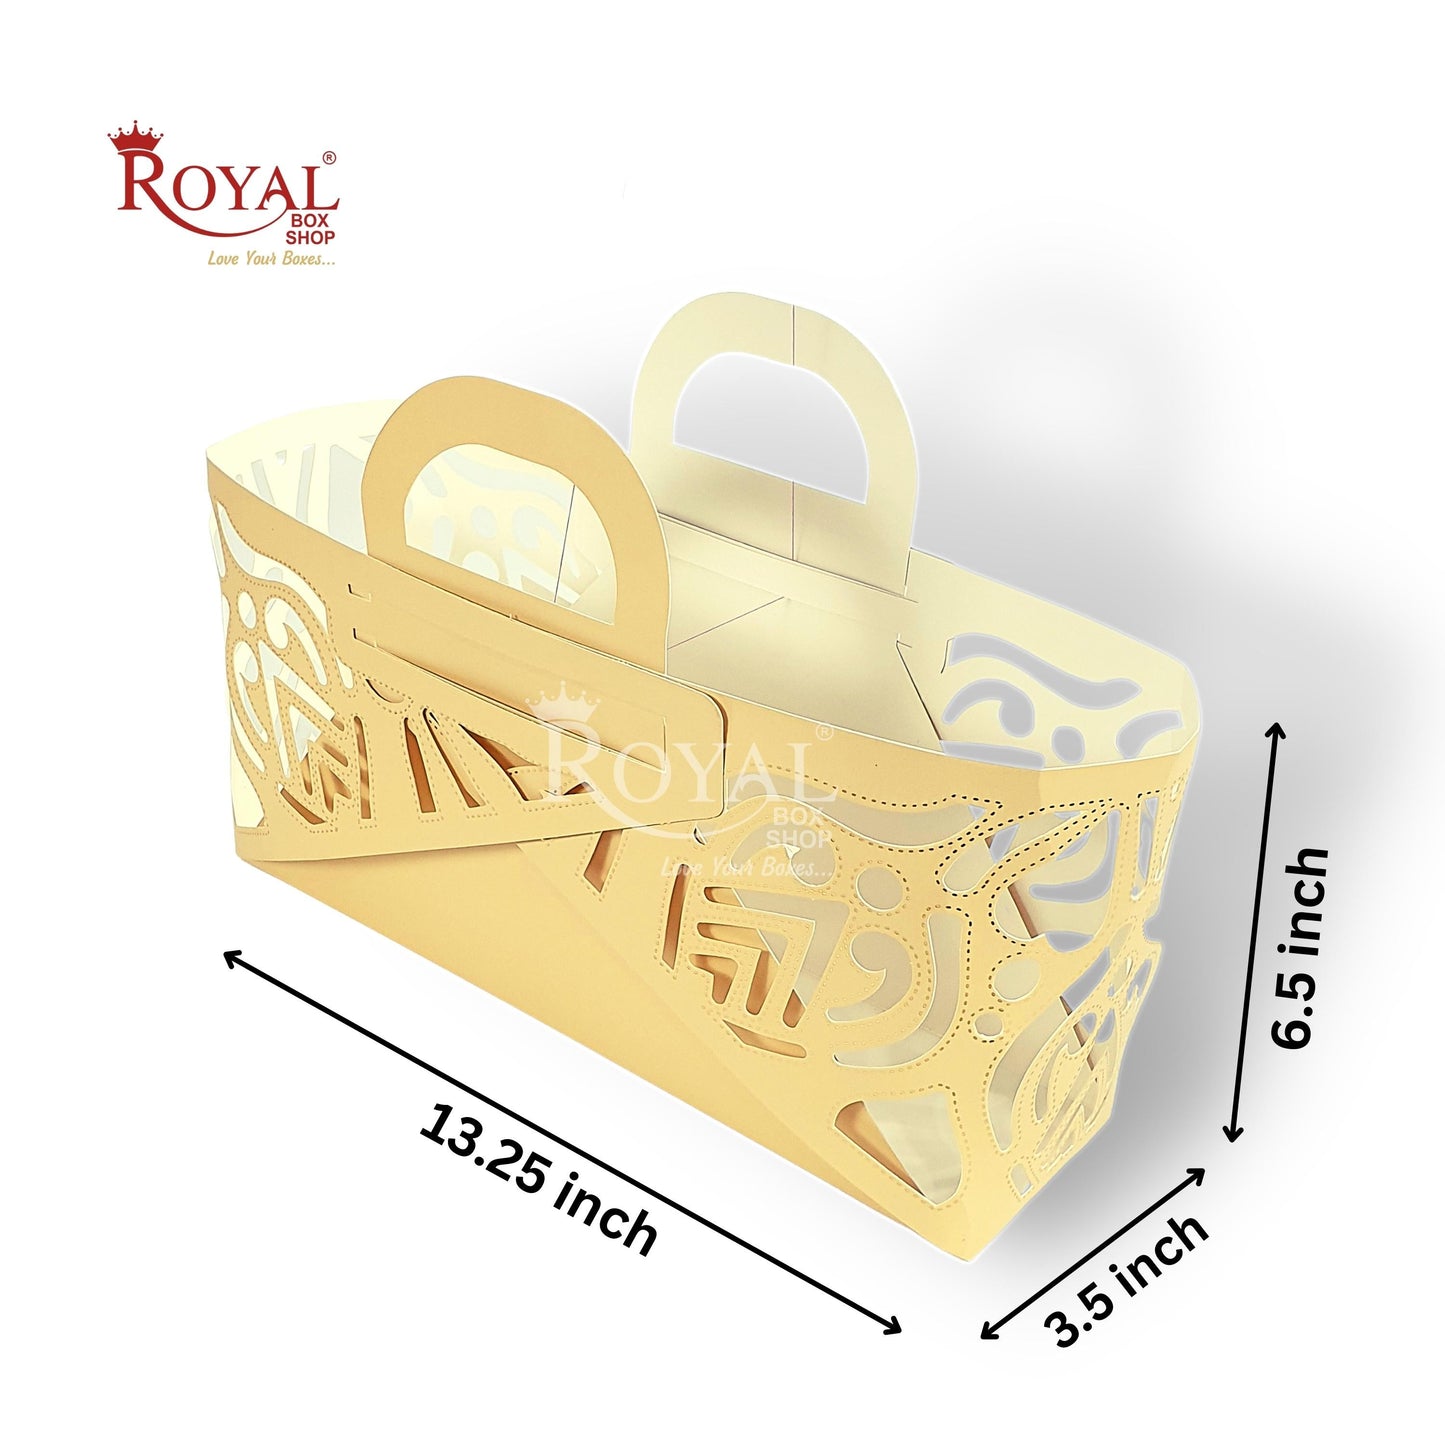 Royal 4 Jar Gift Hamper Bags I Laser Cut Gold Foiling I Beige Color I Christmas, Wedding, Corporate Birthday Return  Gifting Hamper Bags Royal Box Shop